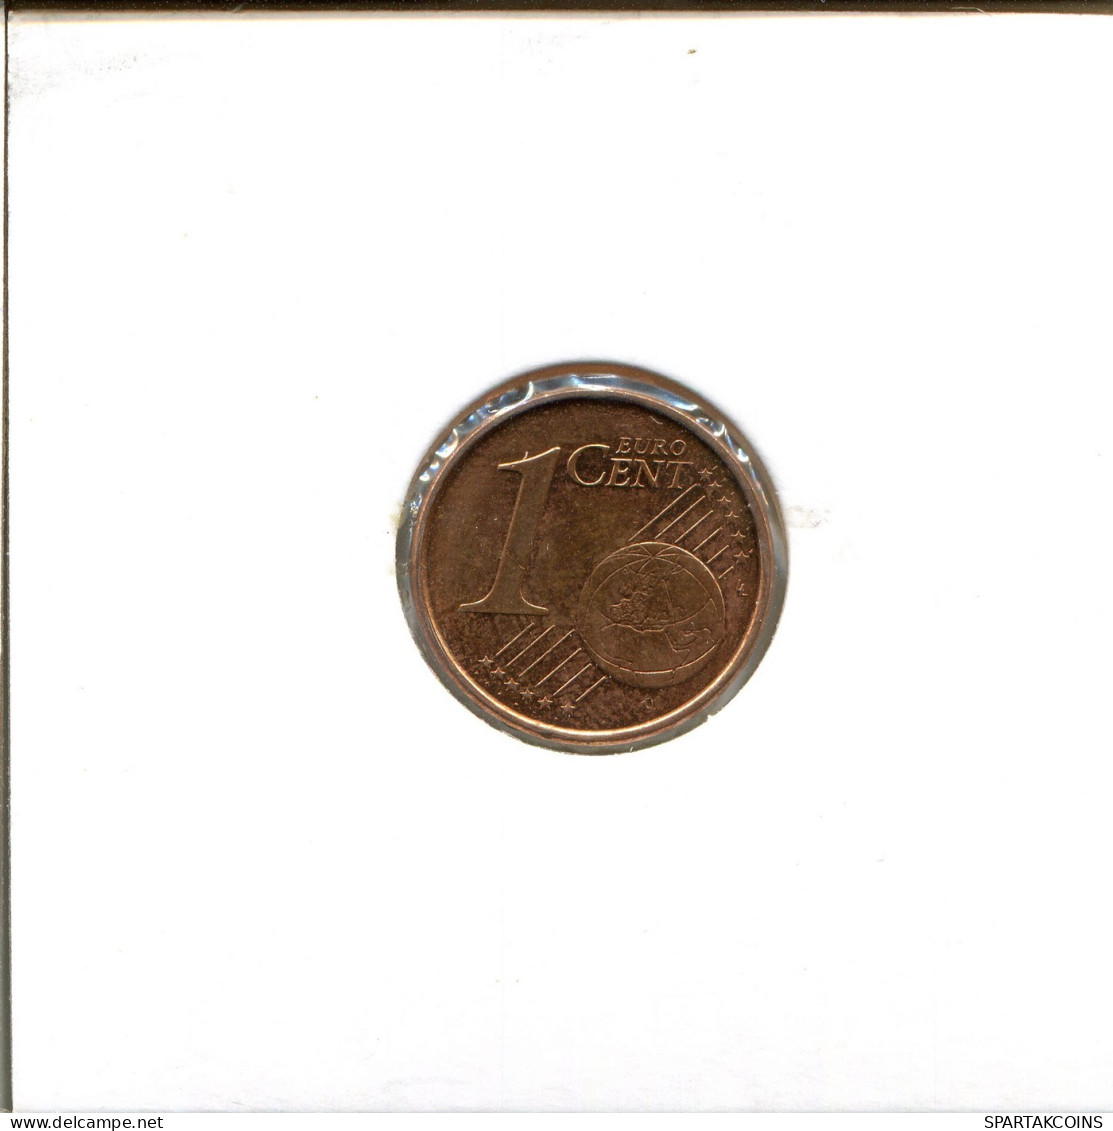 1 EURO CENT 2004 SPAIN Coin #EU328.U.A - Spanien